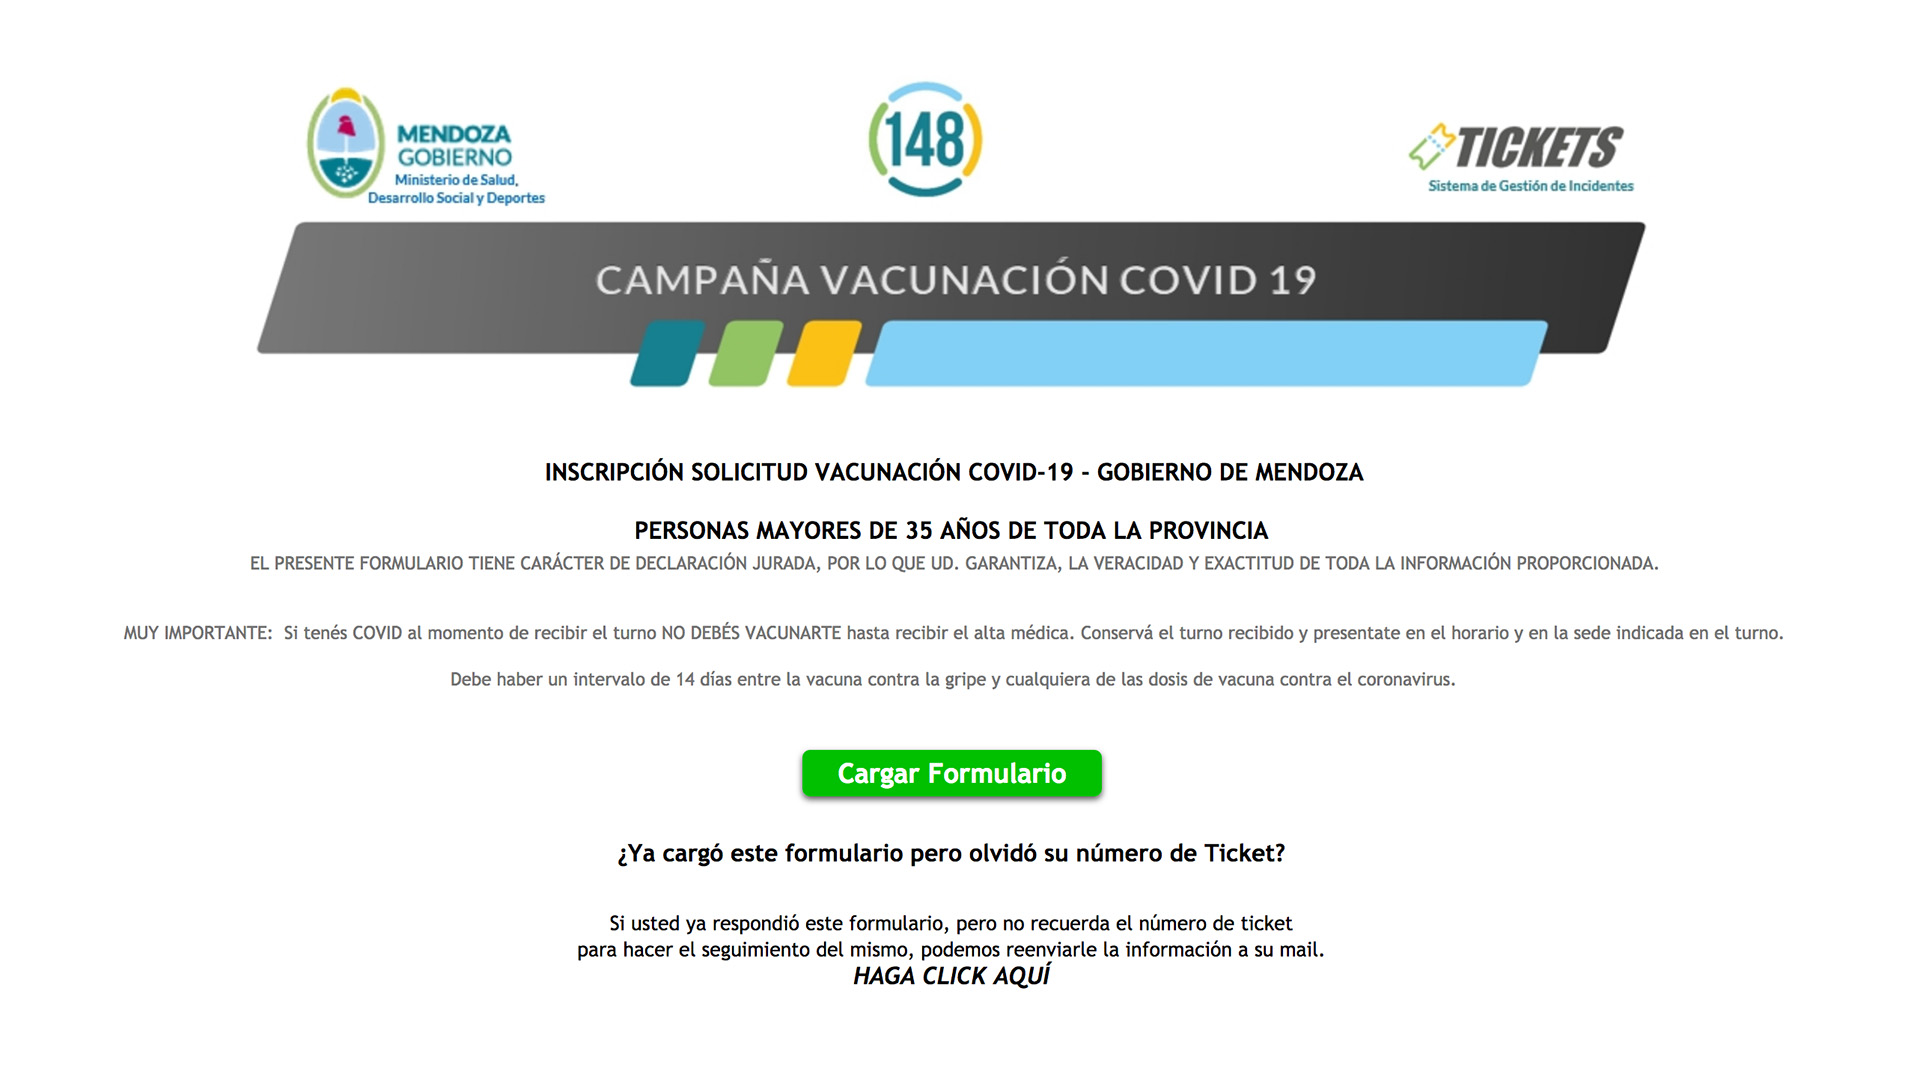 La inscripción para vacunarse se hace a través de la página web www.mendoza.gov.ar/vacunacion-covid-19 